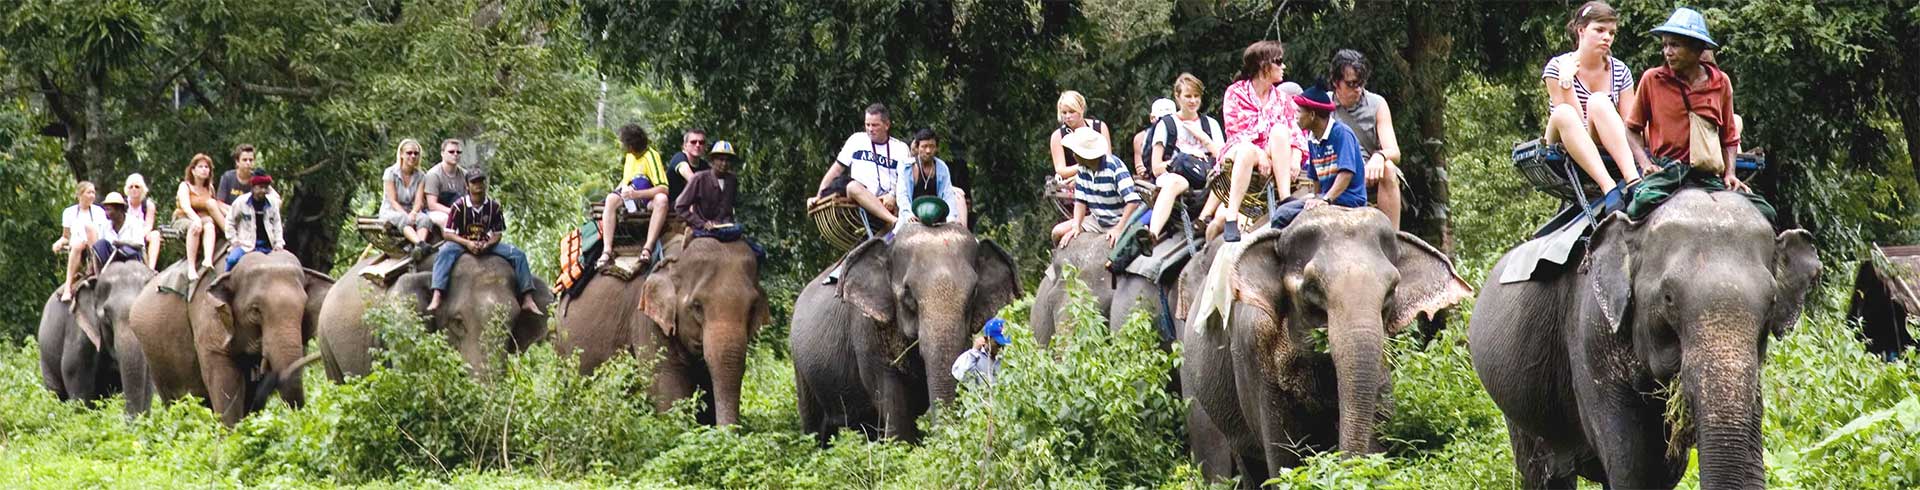 elephant safari india